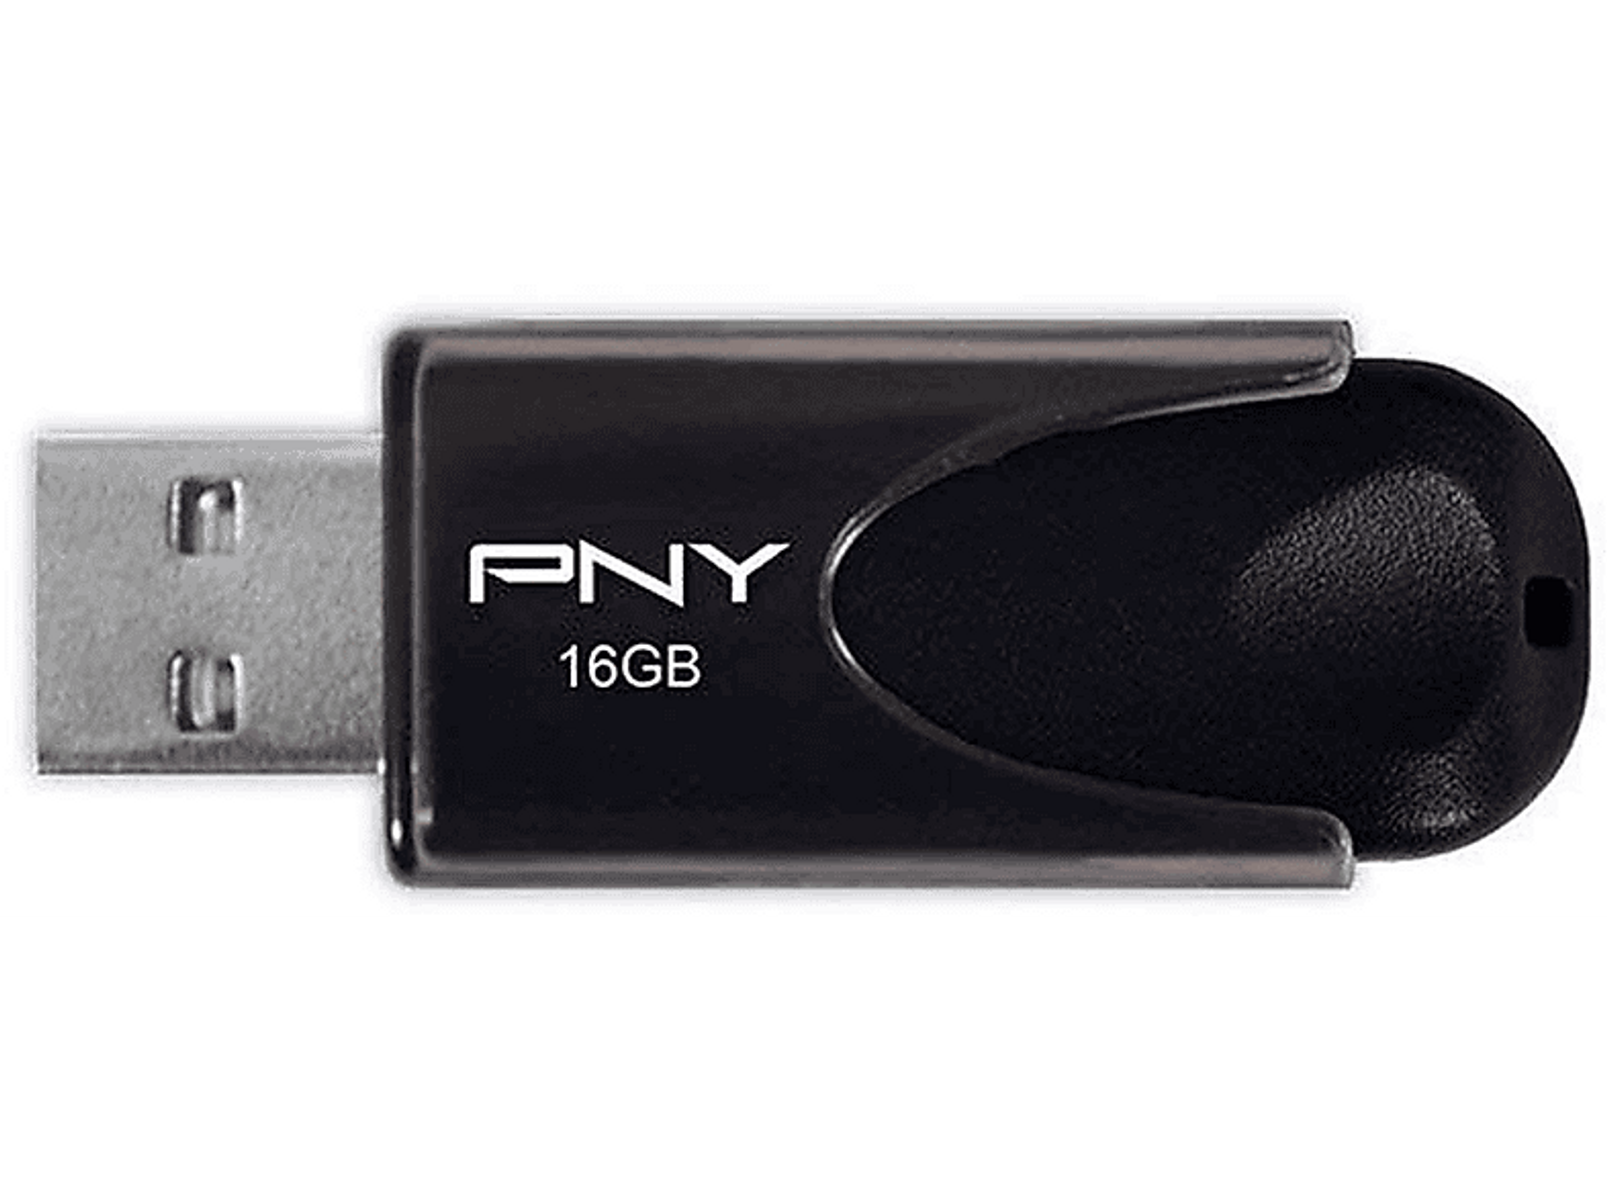 PNY GB) 4 16 PNY 2.0 (Schwarz, STICK Attaché 16GB USB-Flash-Laufwerk